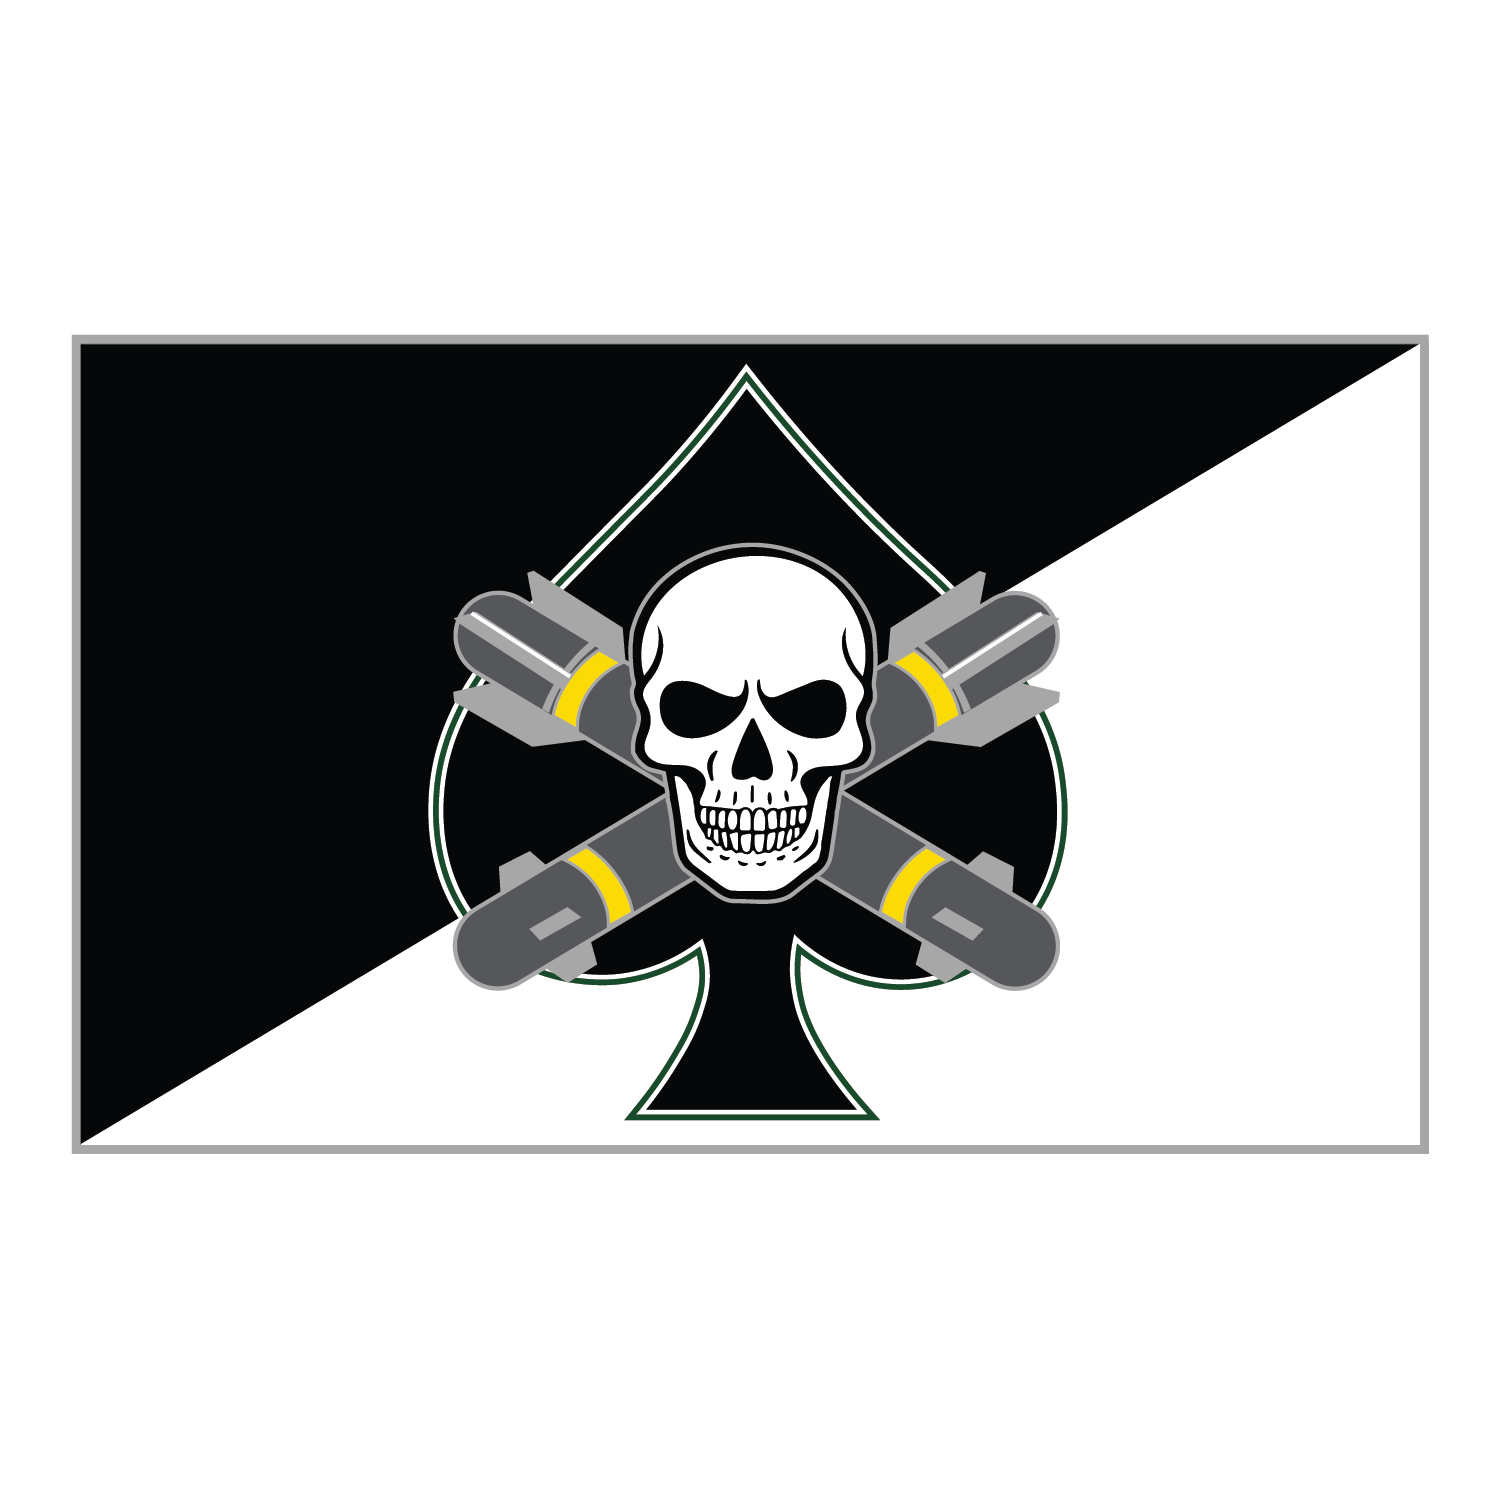 B 1-10 AB "Killer Spade"